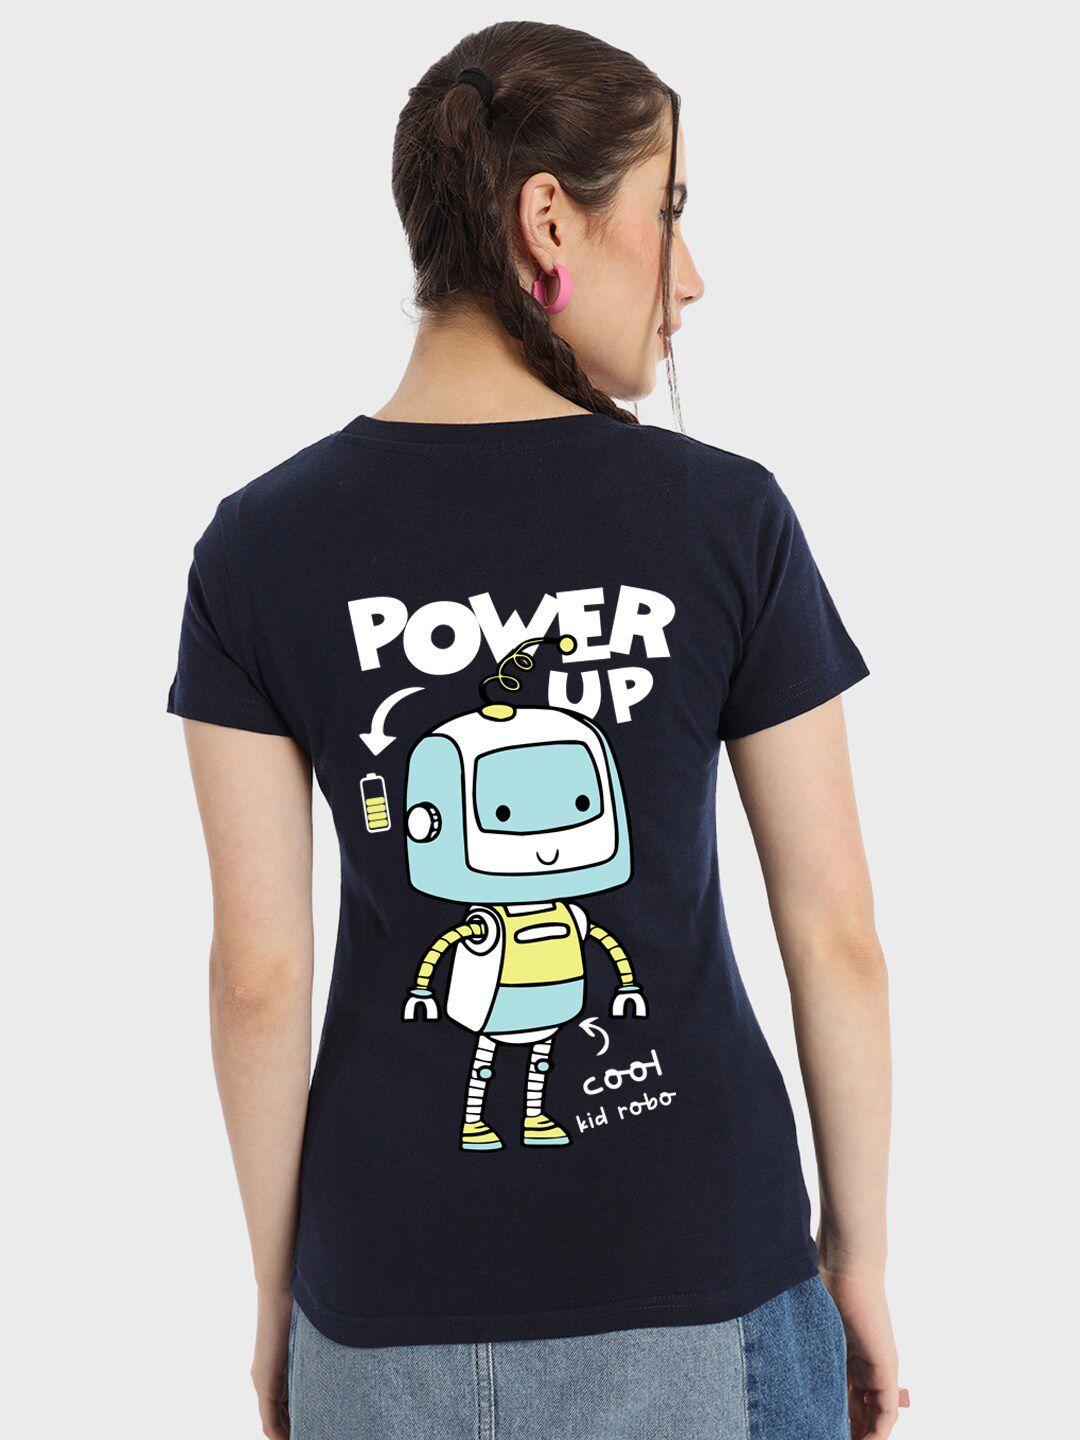 bewakoof power up graphic printed cotton t-shirt